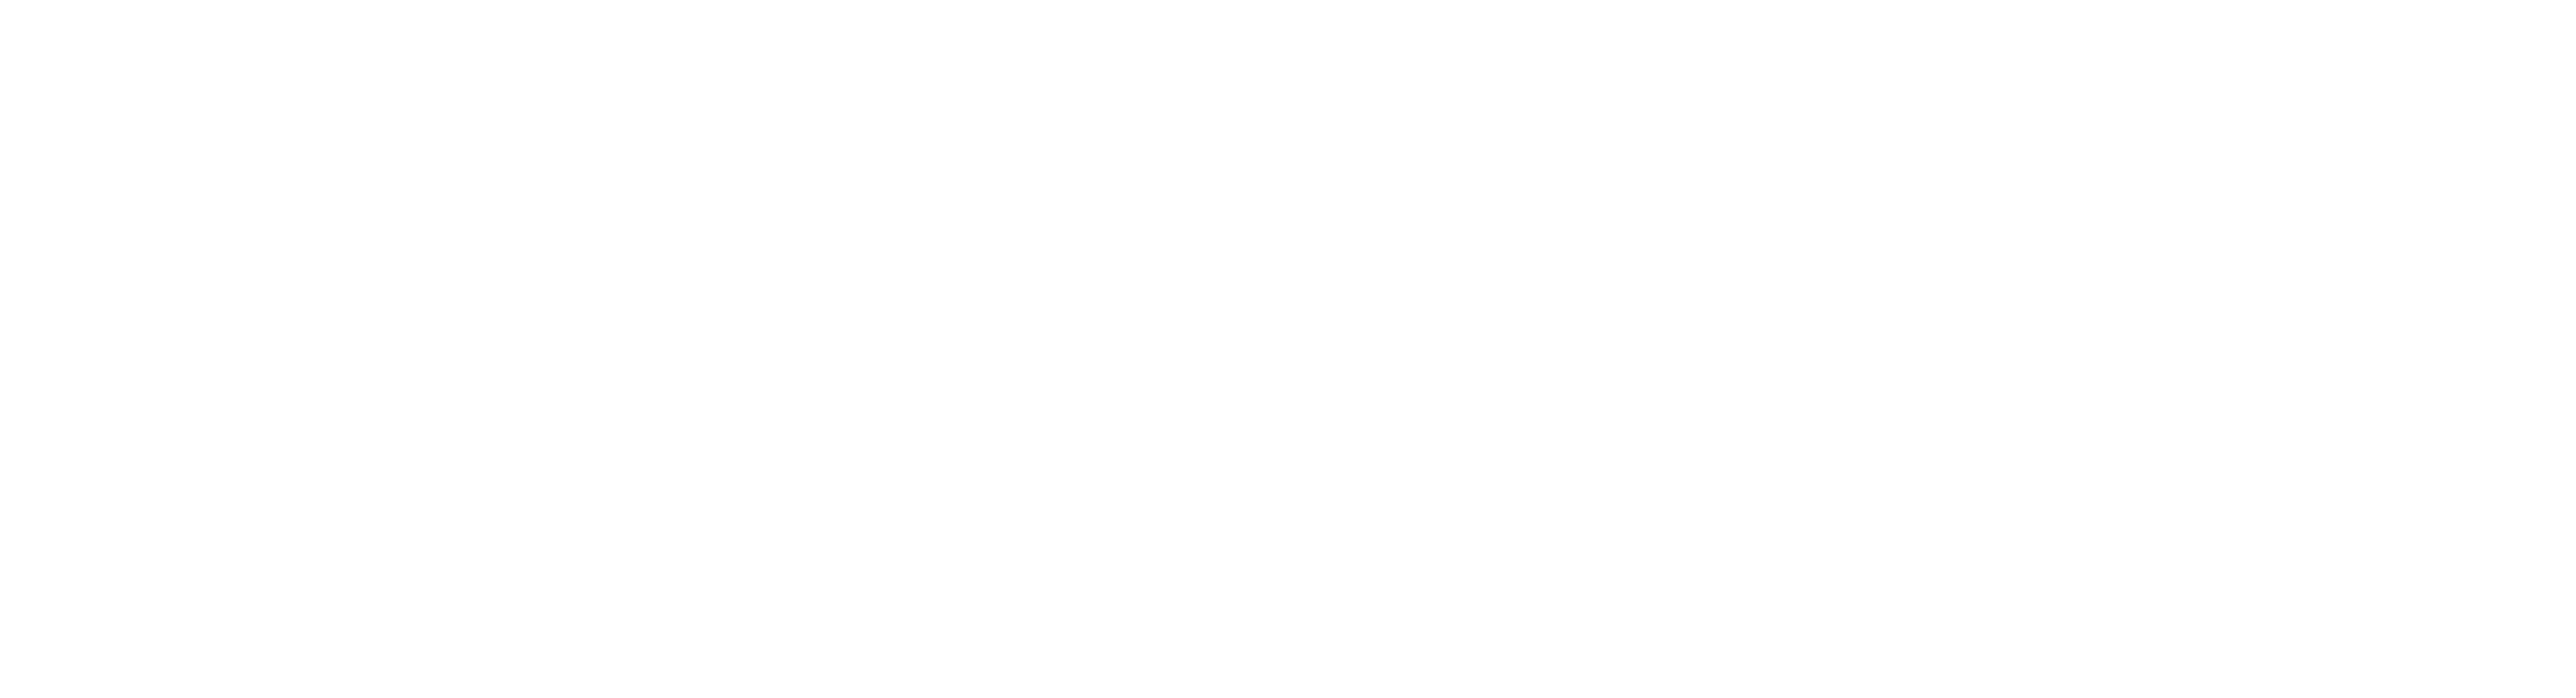 3D Robotics